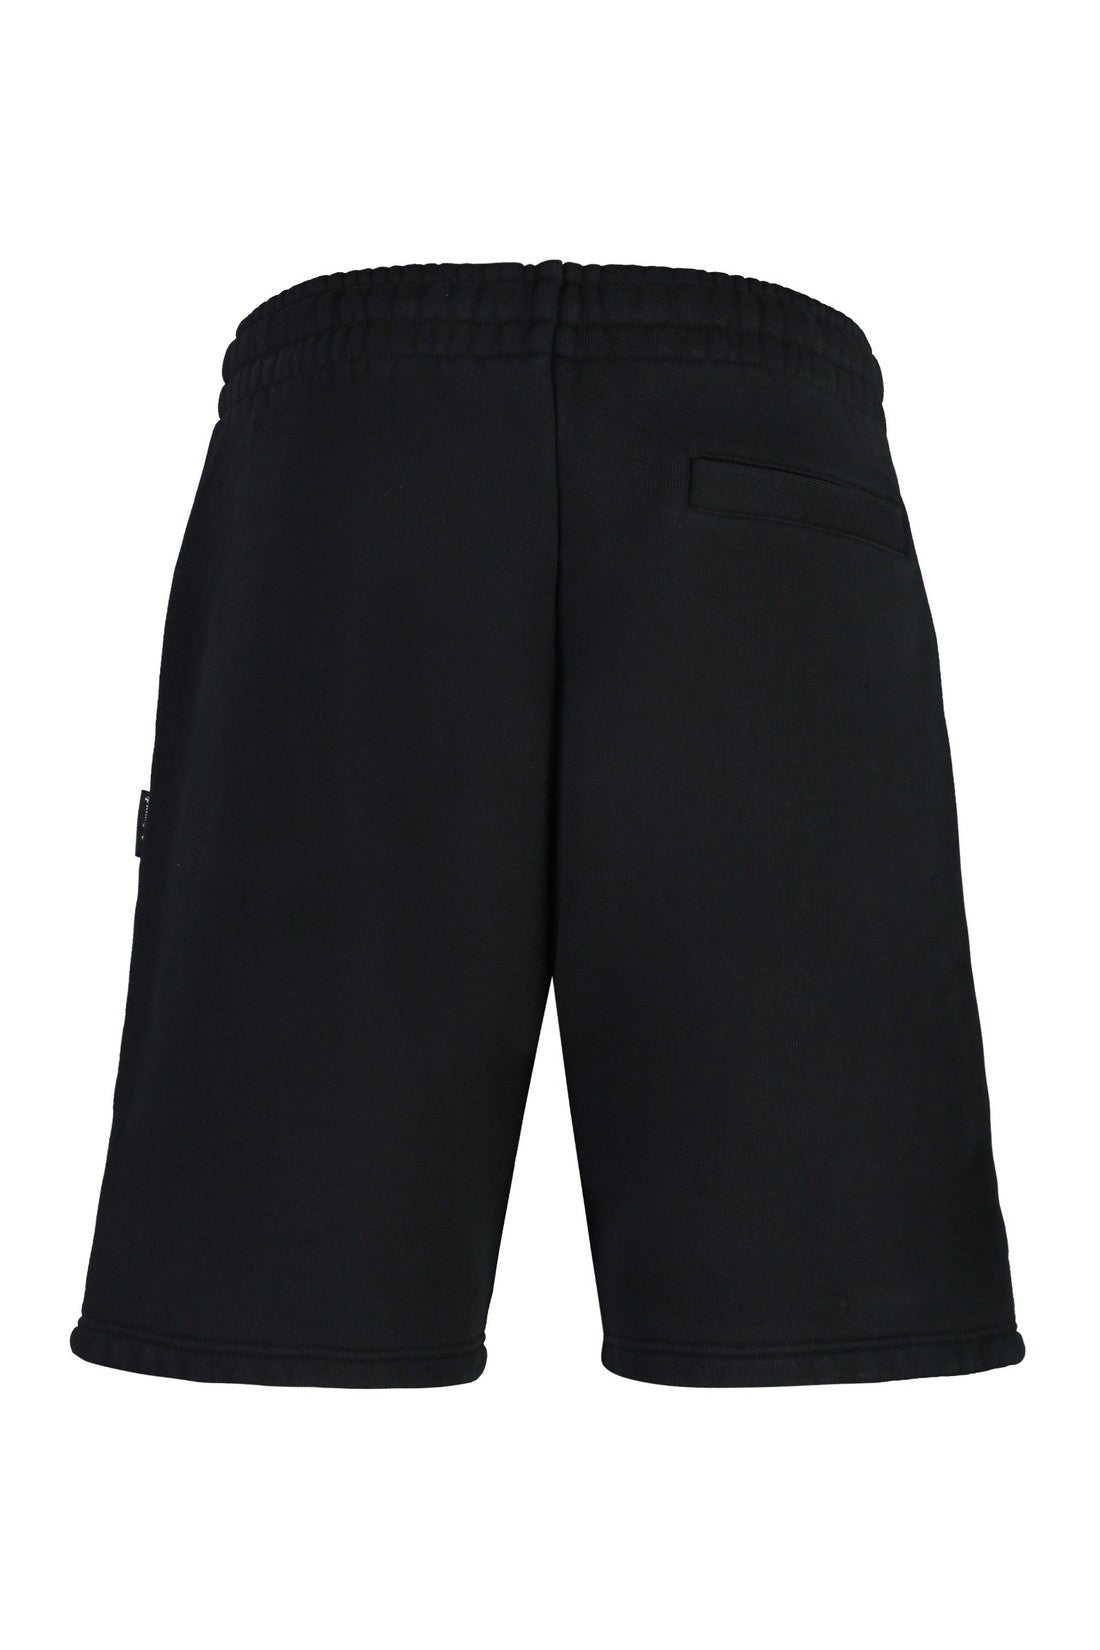 Palm Angels-OUTLET-SALE-Hunter cotton shorts-ARCHIVIST